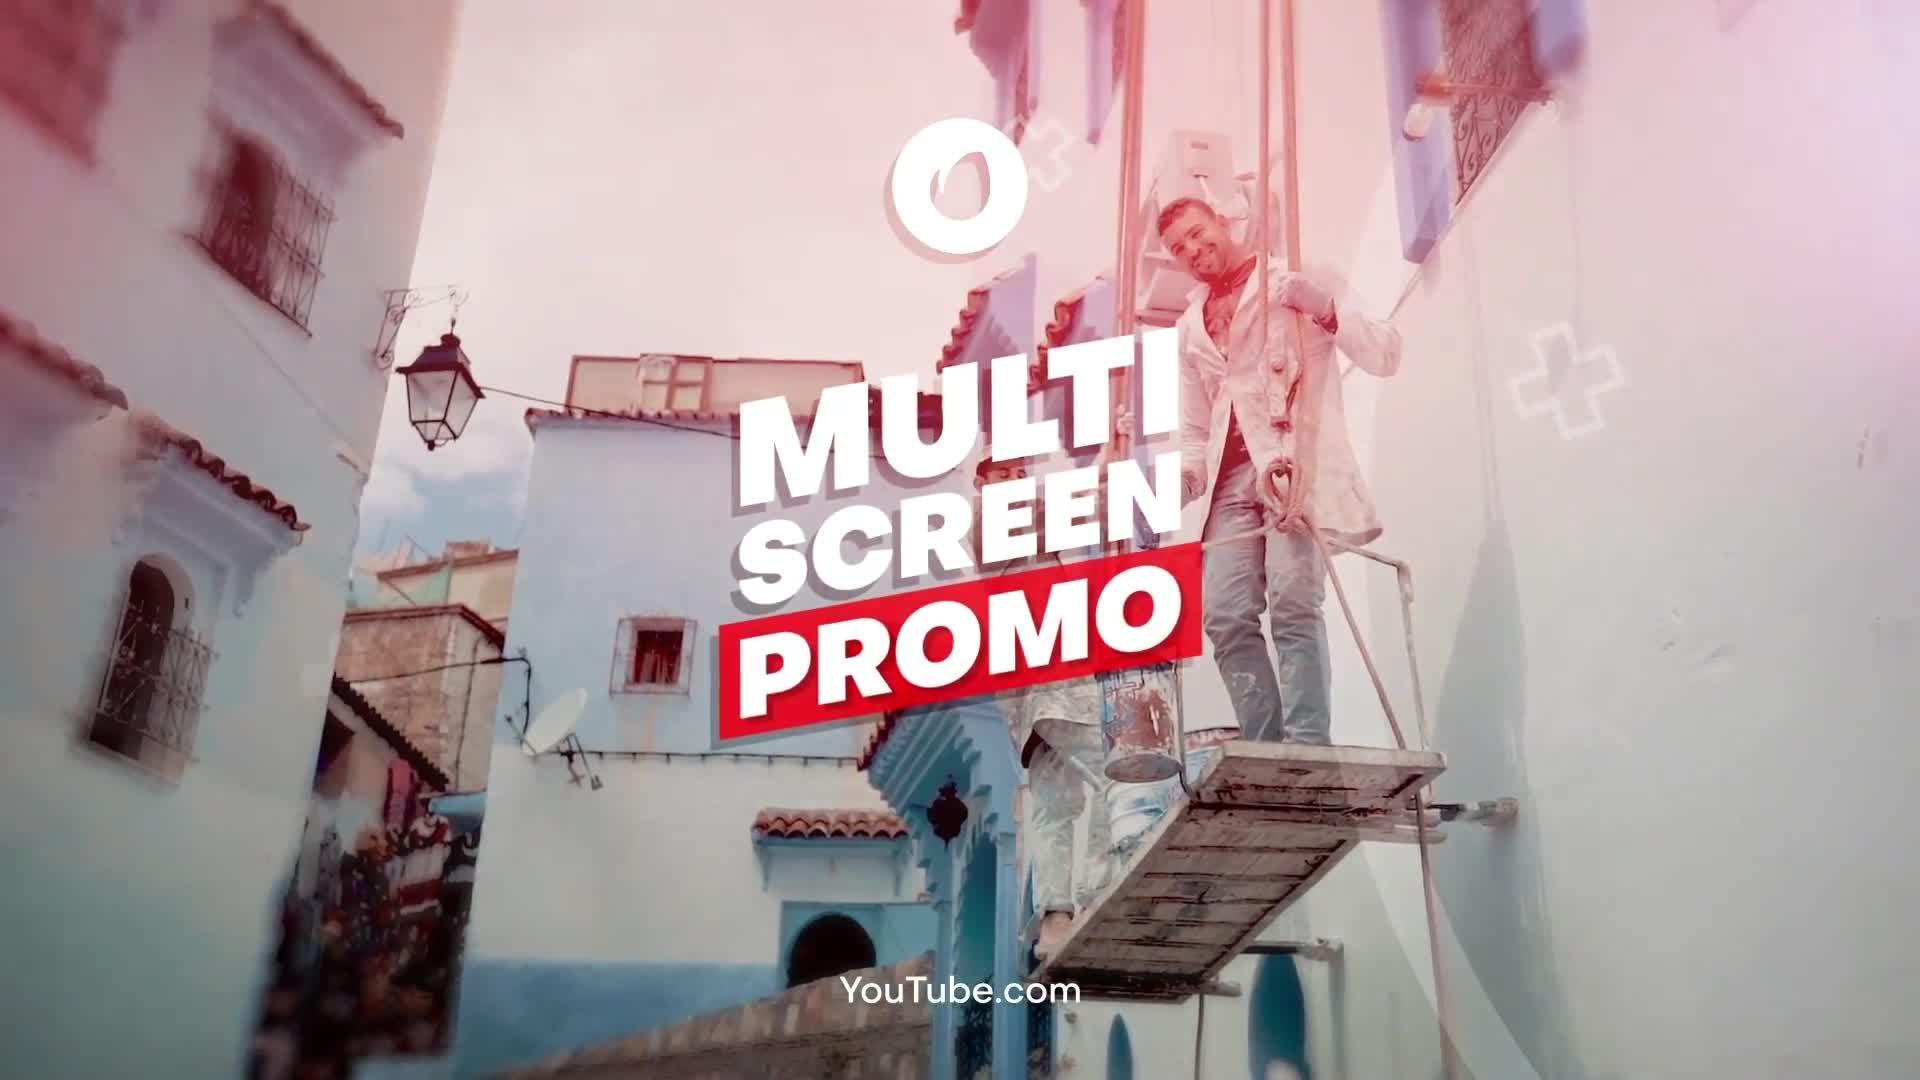 Multi Screen Promo | Premiere Pro Videohive 36254661 Premiere Pro Image 1